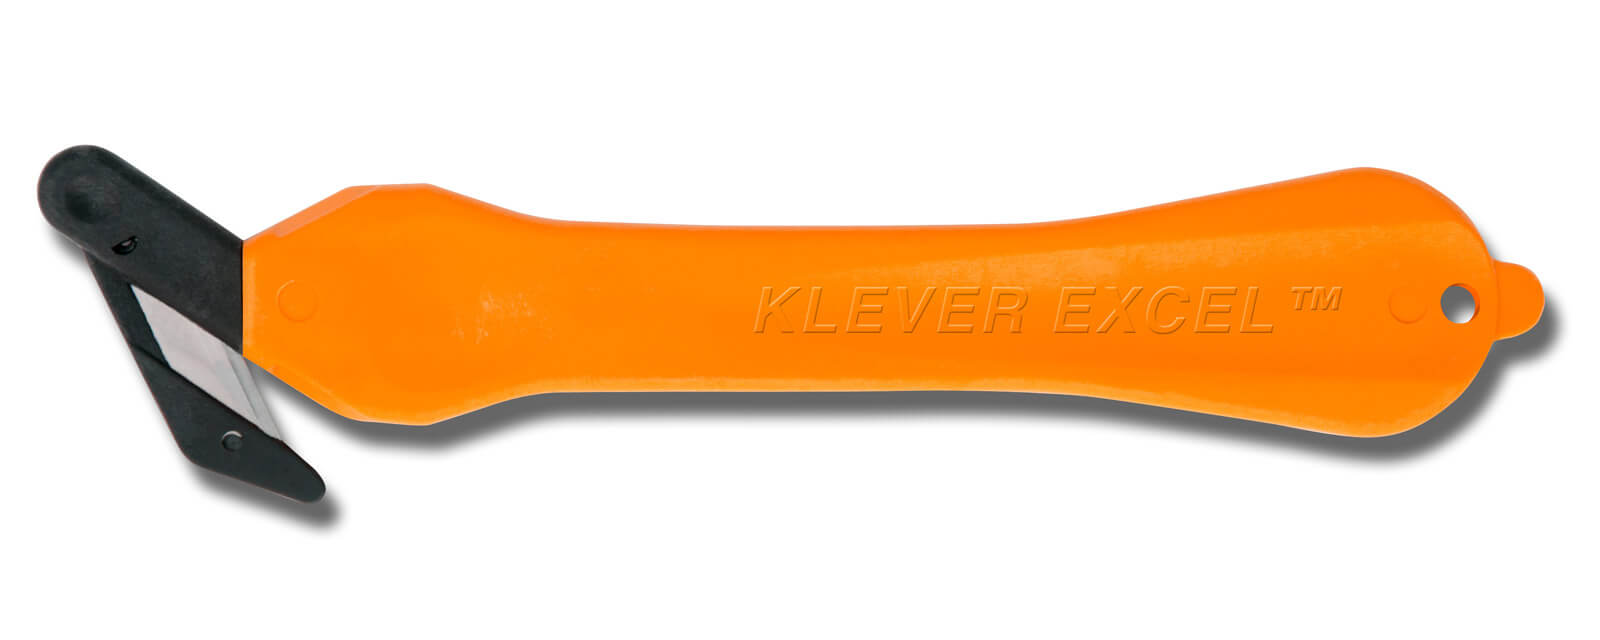 H034O-Sicherheitsmesser-Klever-Excel-orange-Breitkopf-CURT-tools